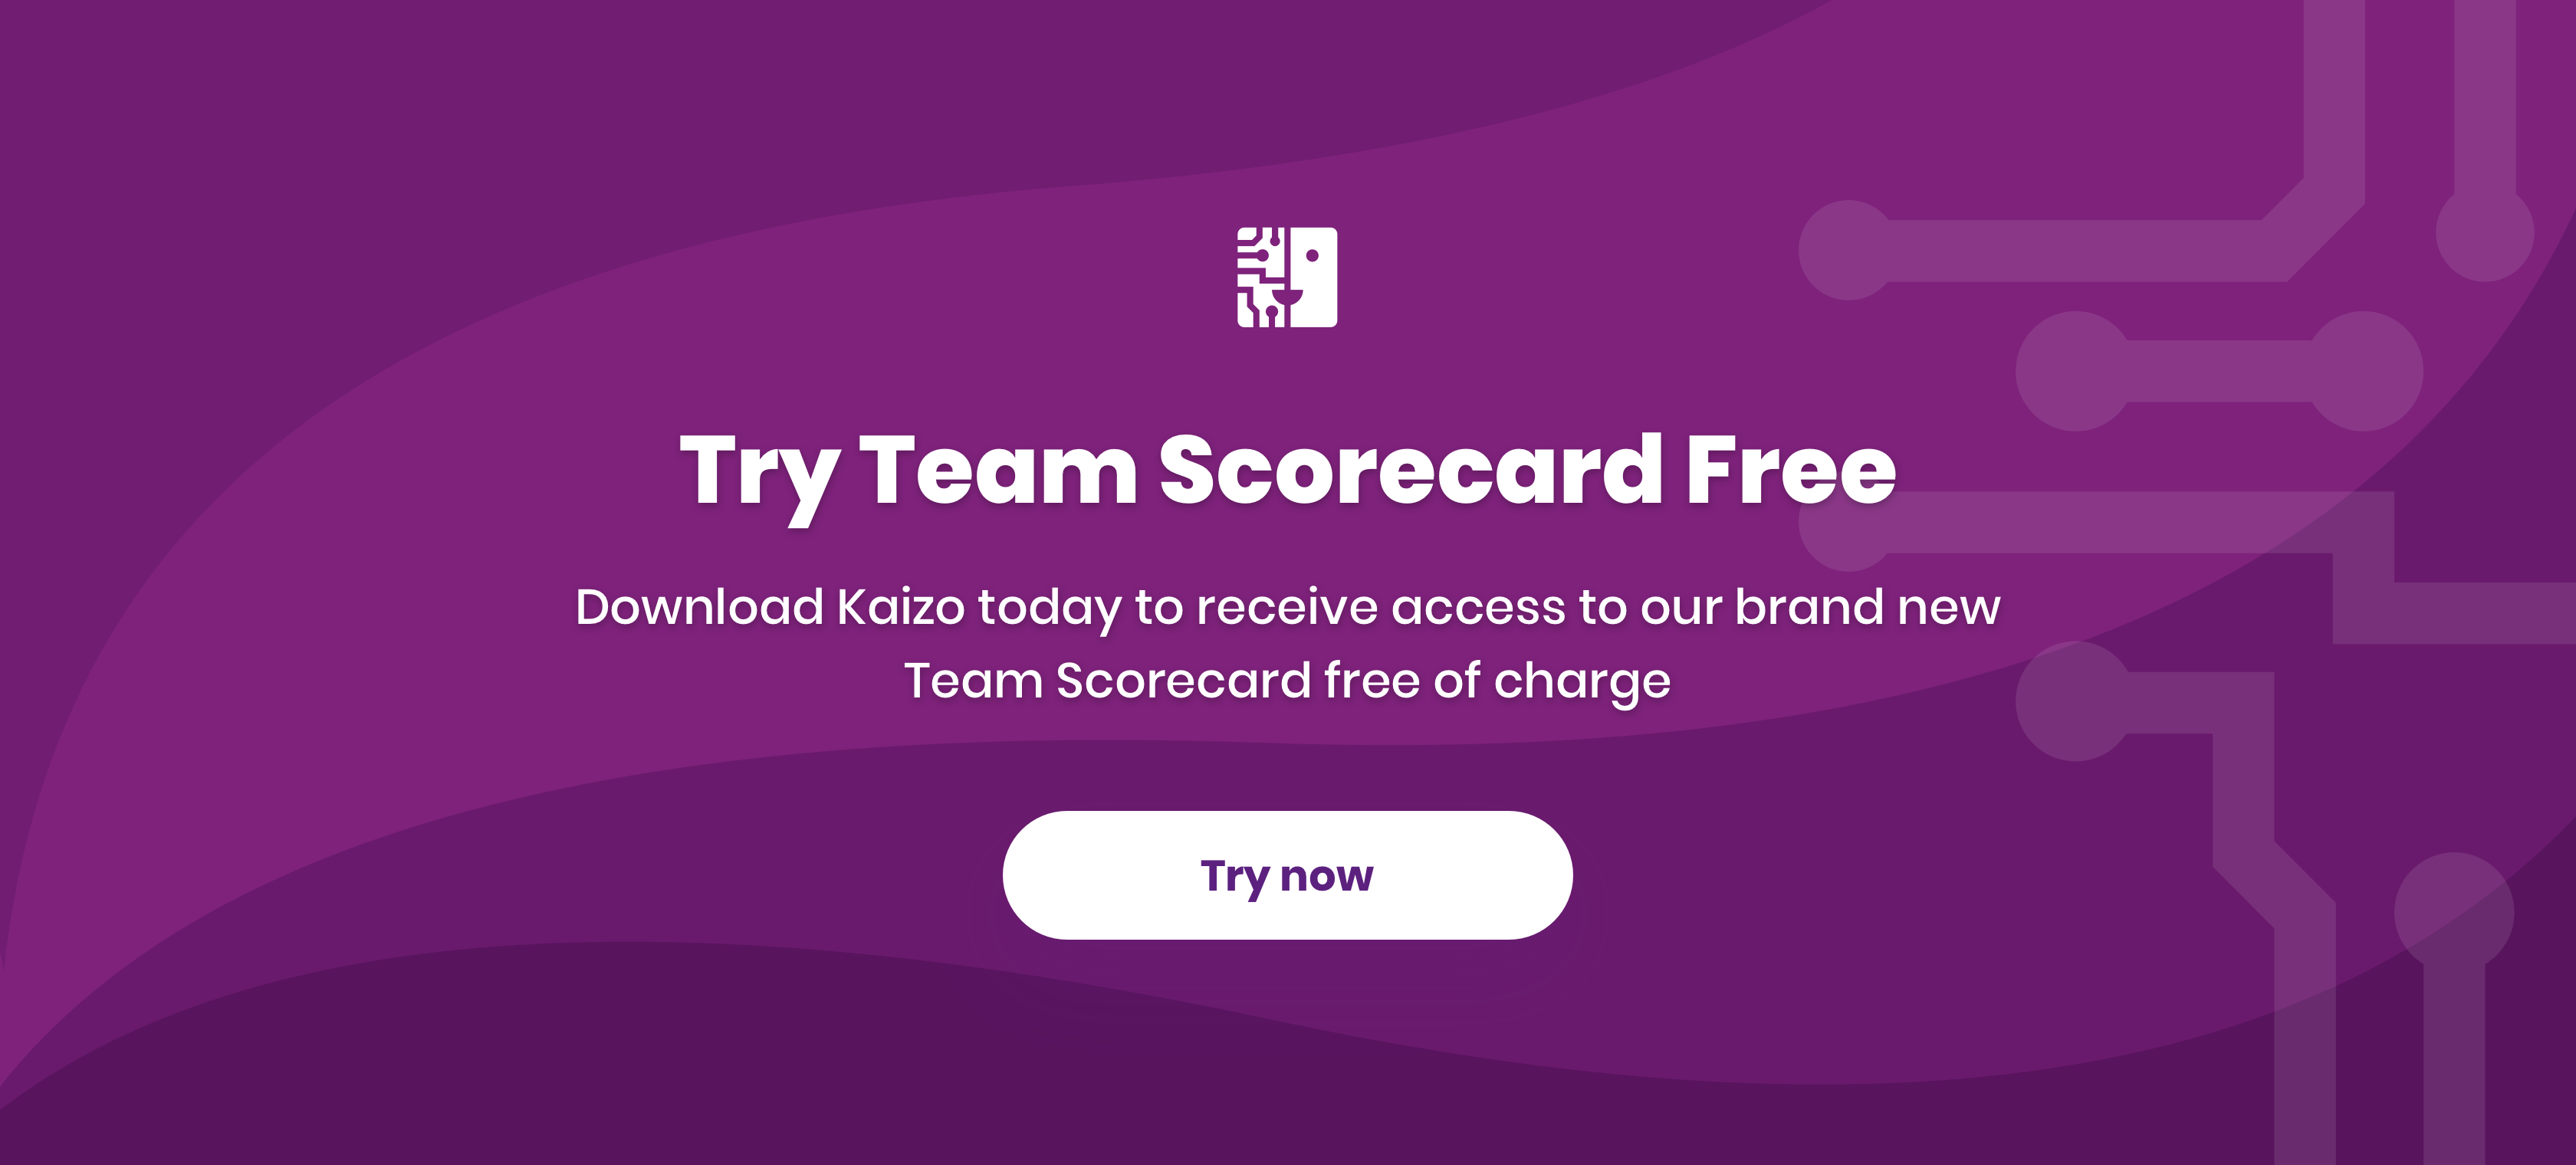 Try Kaizo's Team Scorecard free